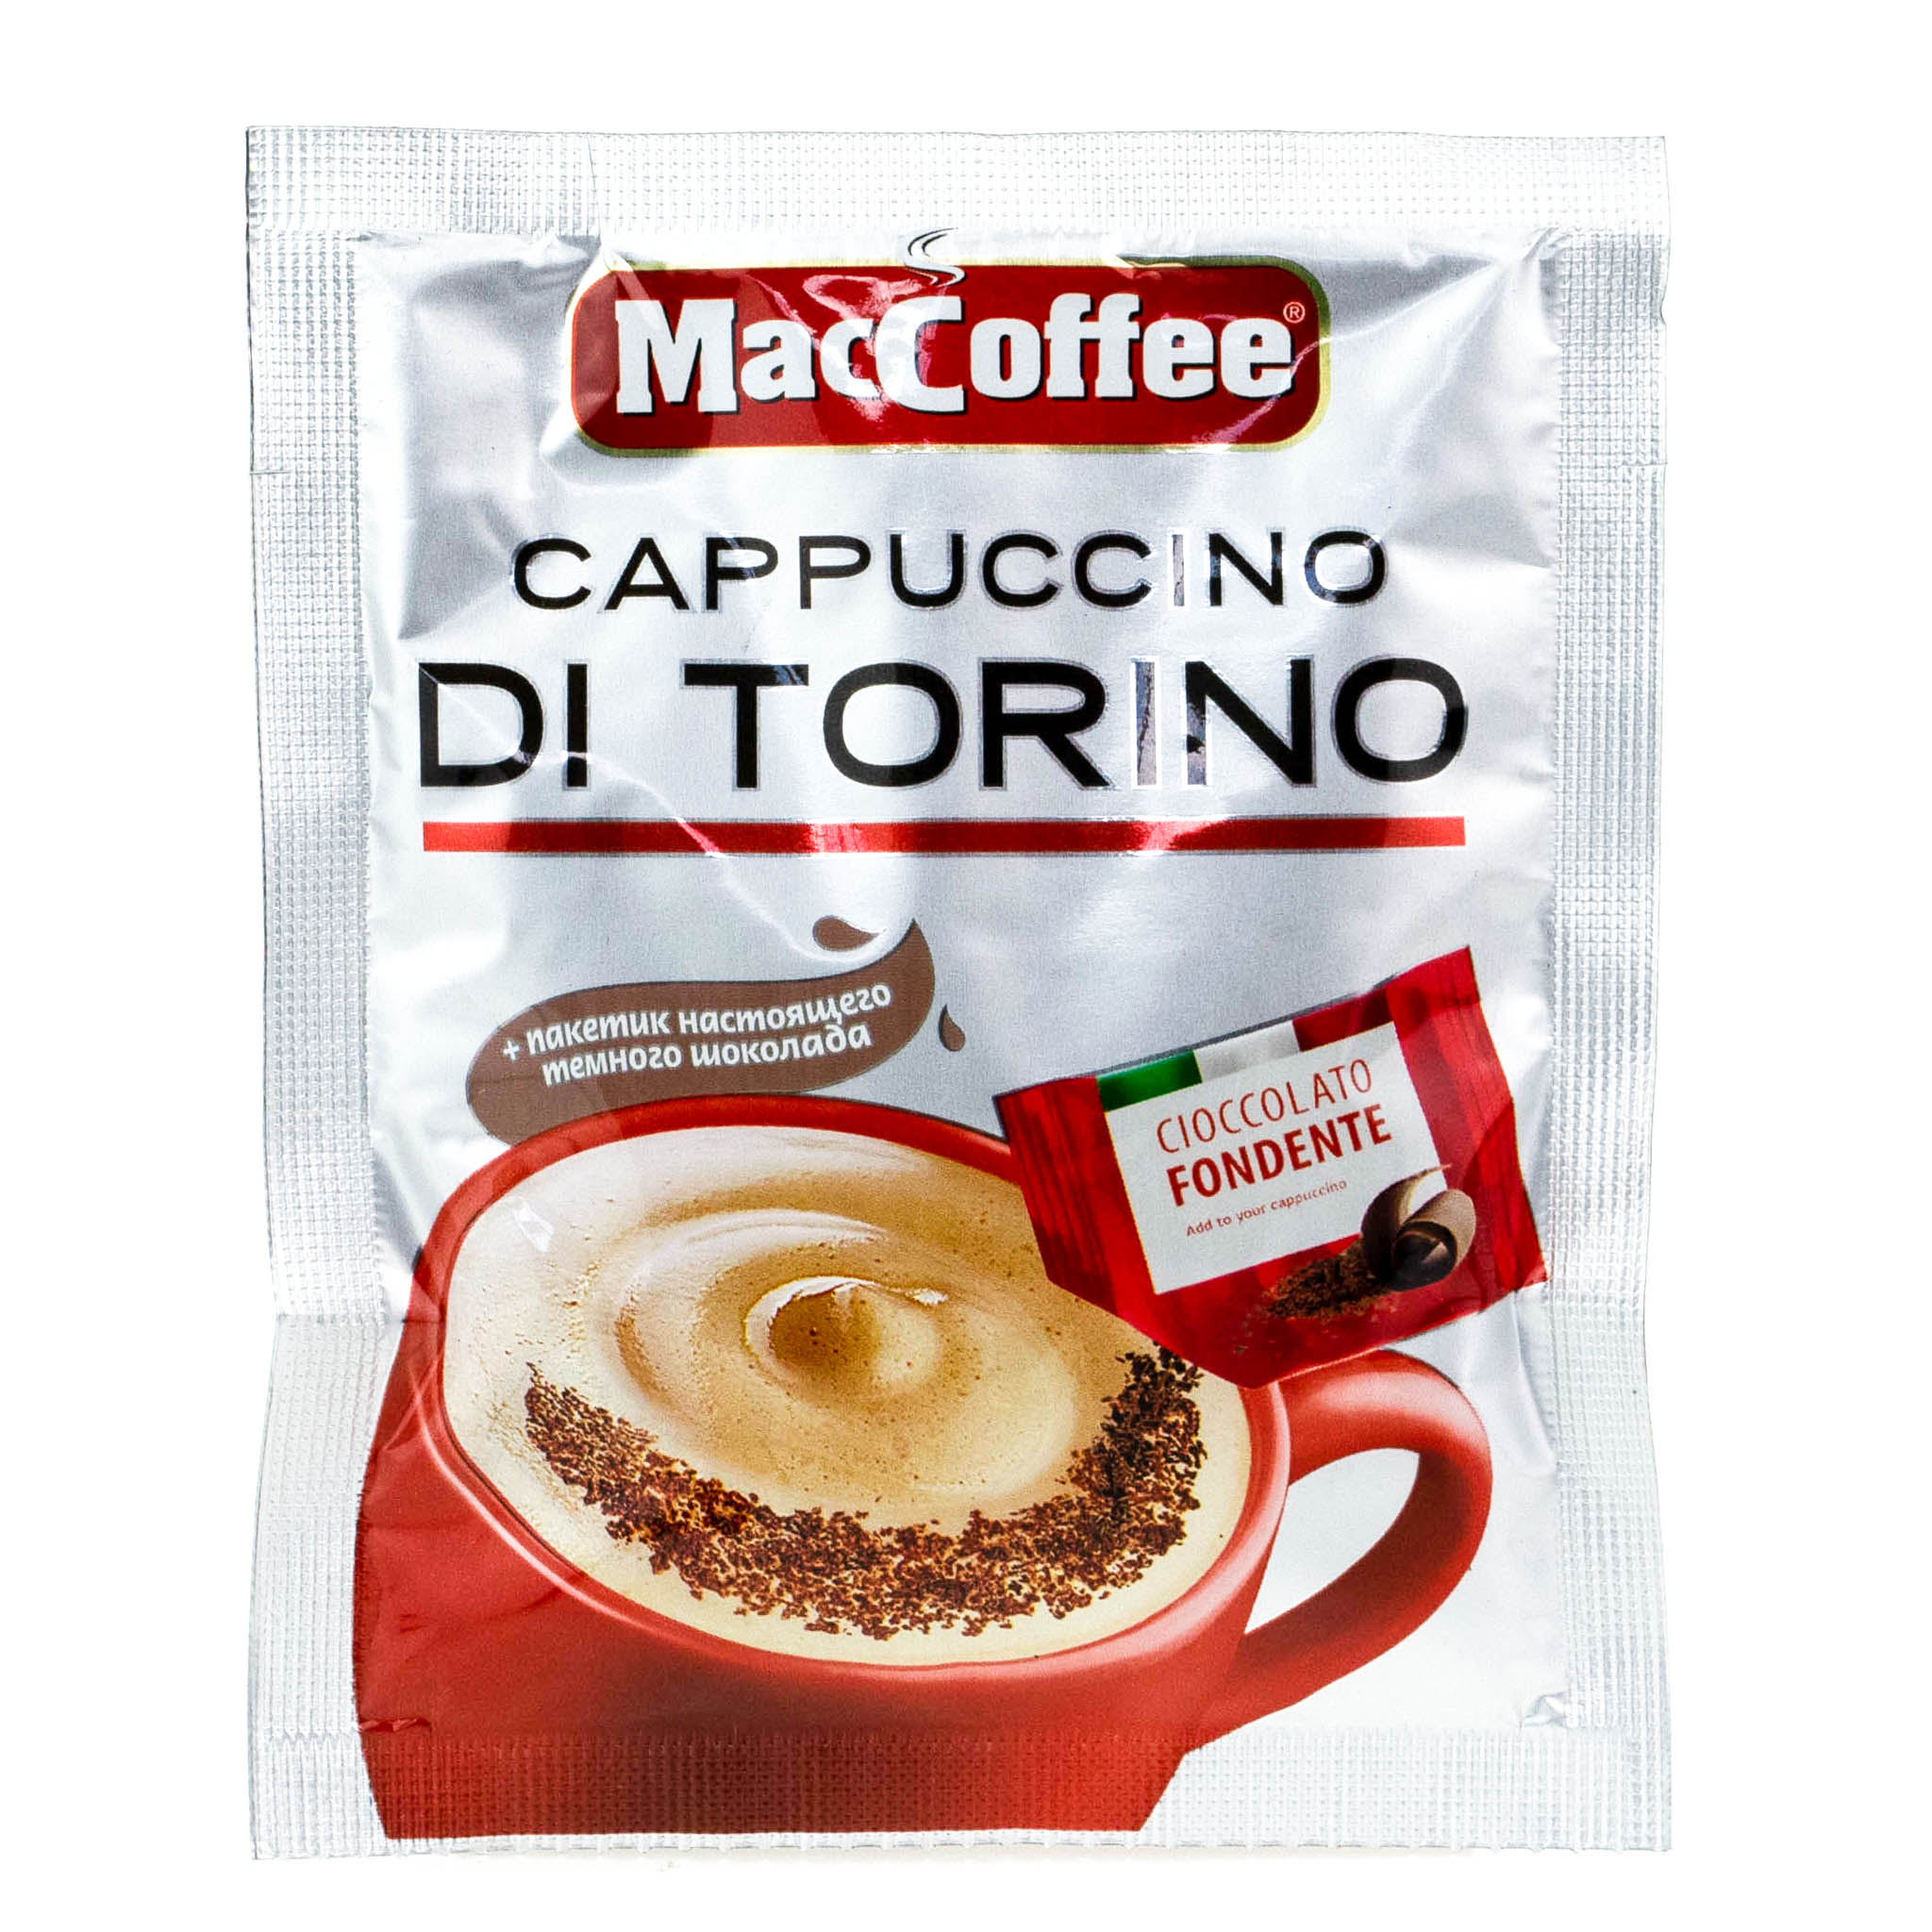 Кофе 3 триместр. Кофе 3 в 1 Маккофе. Кофе 3в1 Маккофе капучино. Маккофе 3 в 1 капучино di Torino. Напиток кофейный MACCOFFEE Cappuccino di Torino 3в1.